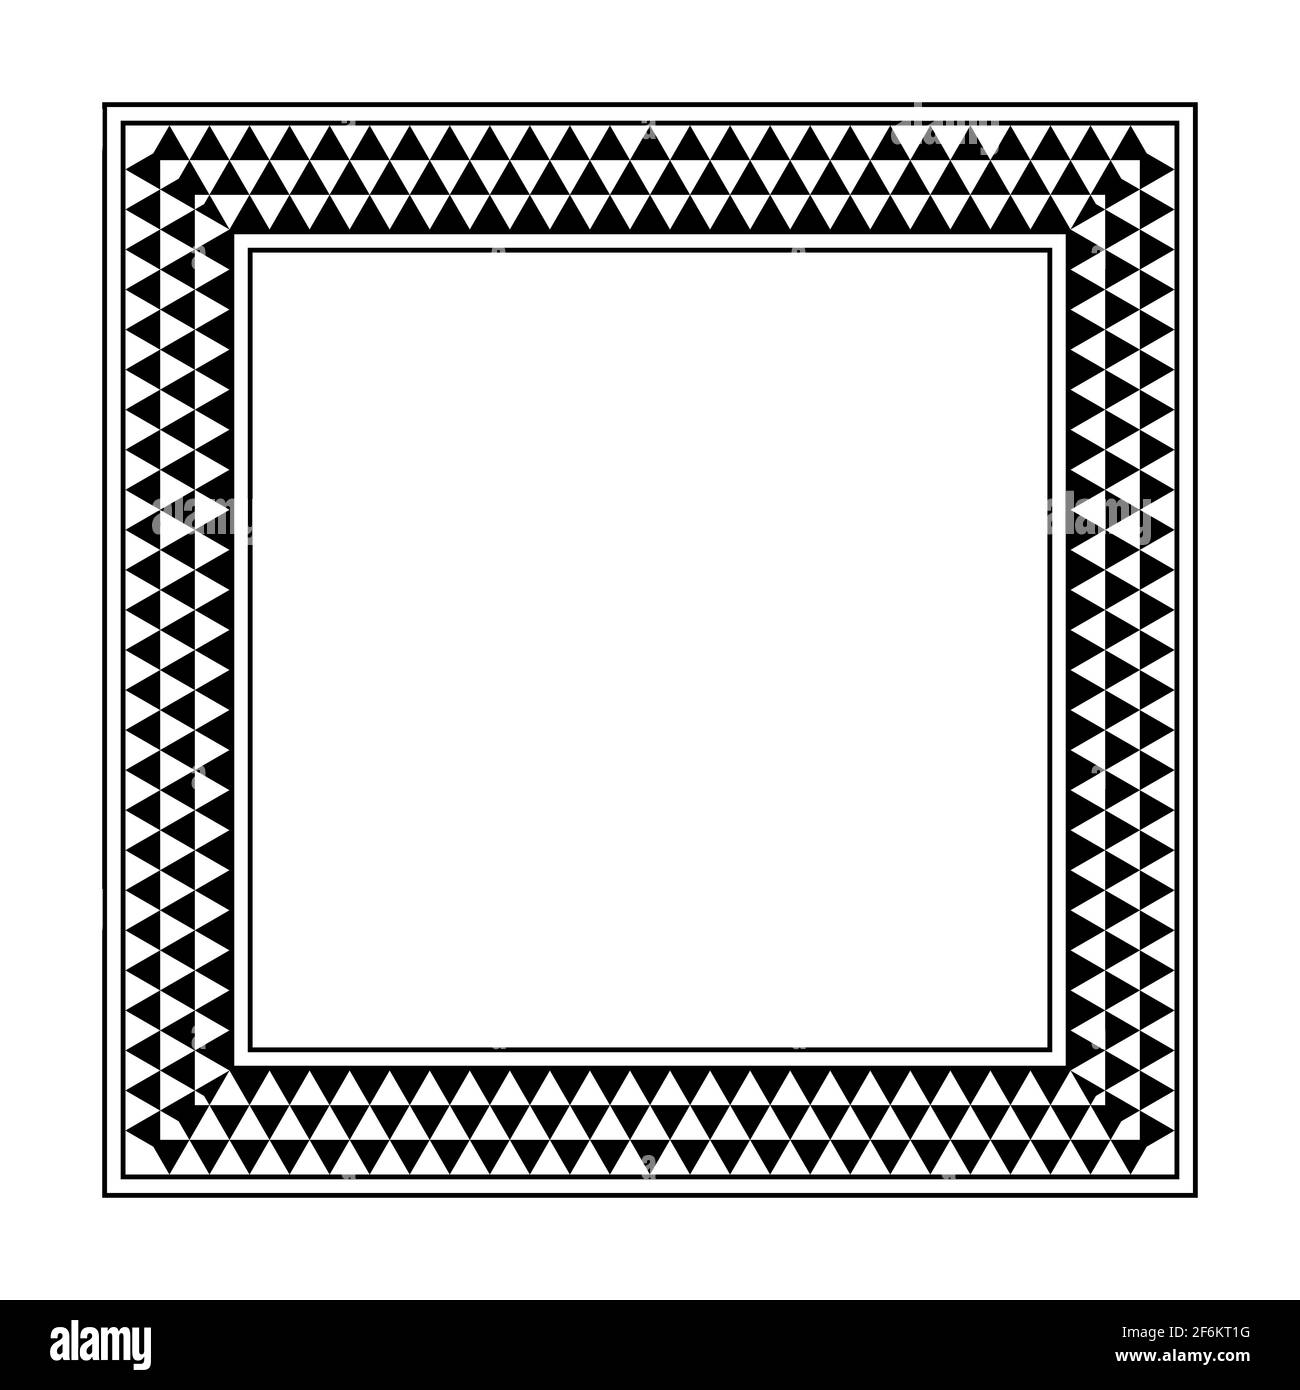 Cornice quadrata con motivo a scacchi triangolare. Bordo oblungo con motivo dentellato, costituito da tre file di triangoli alternati in bianco e nero. Foto Stock